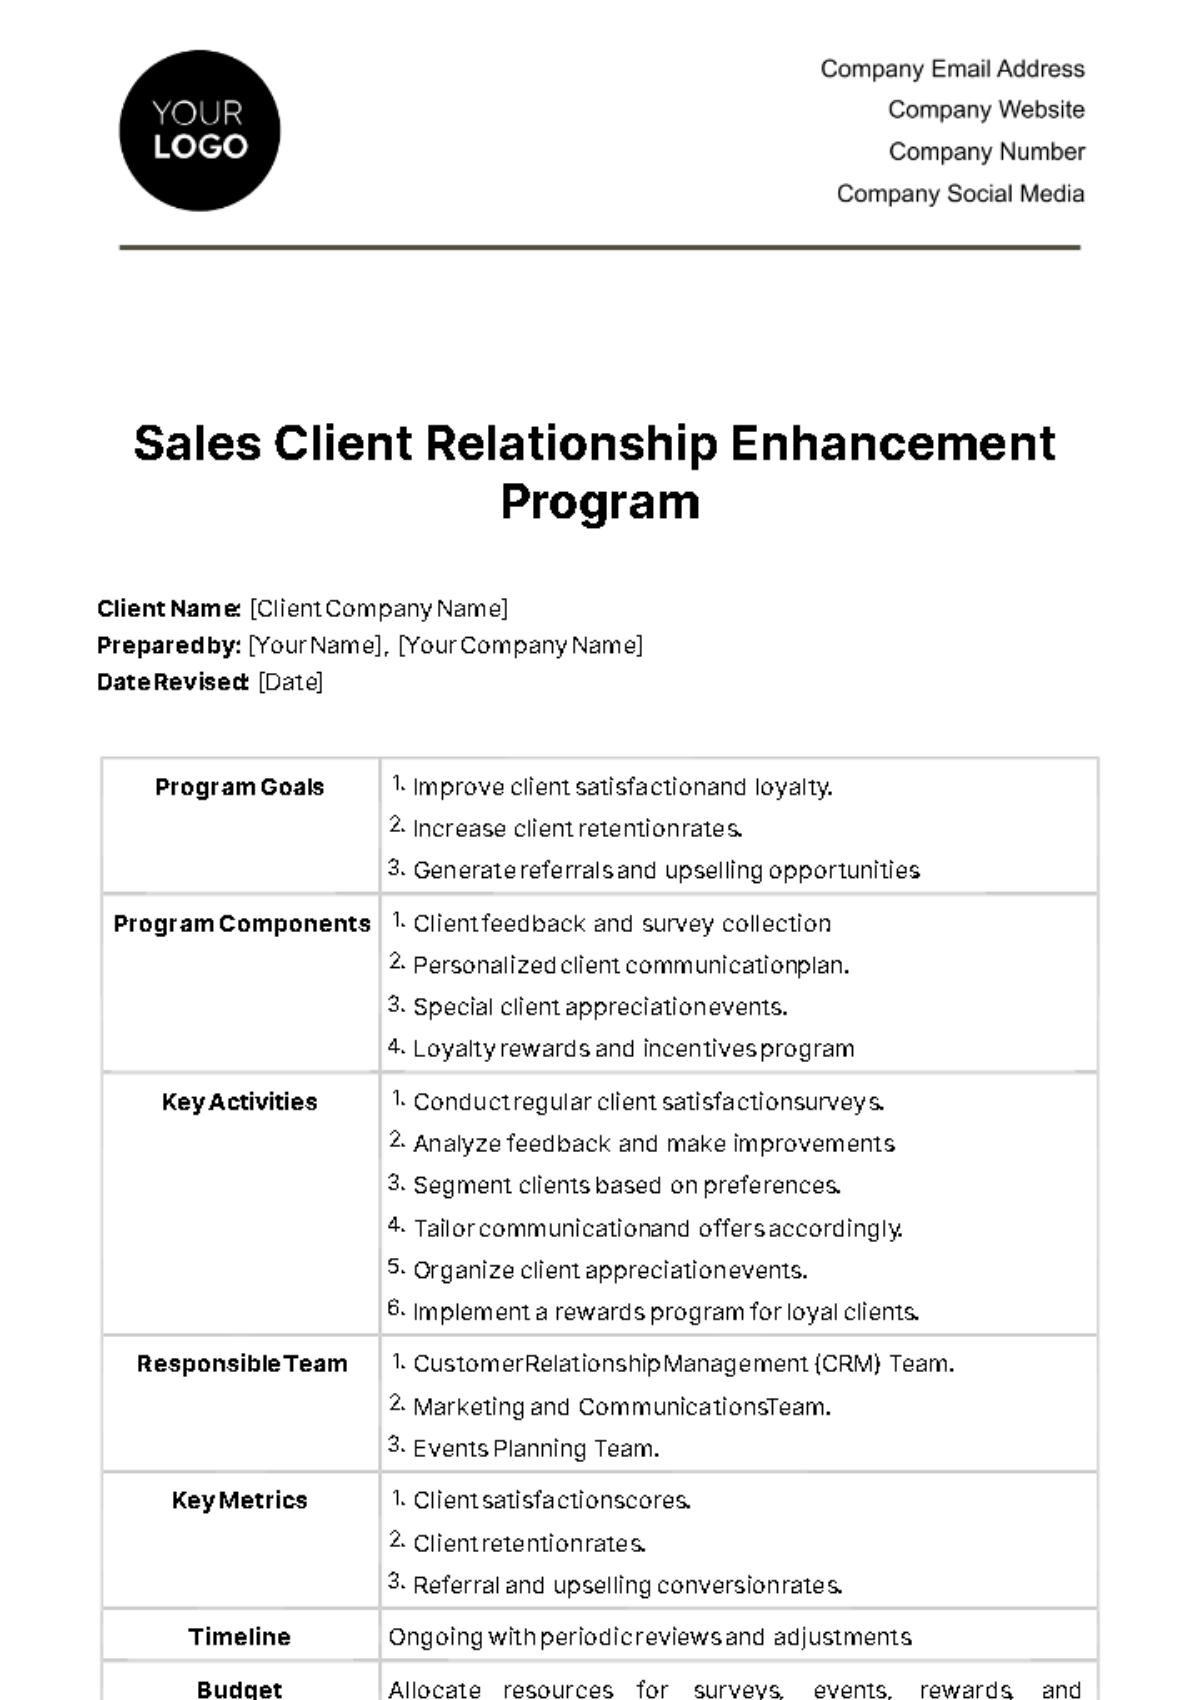 Free Sales Client Relationship Enhancement Program Template